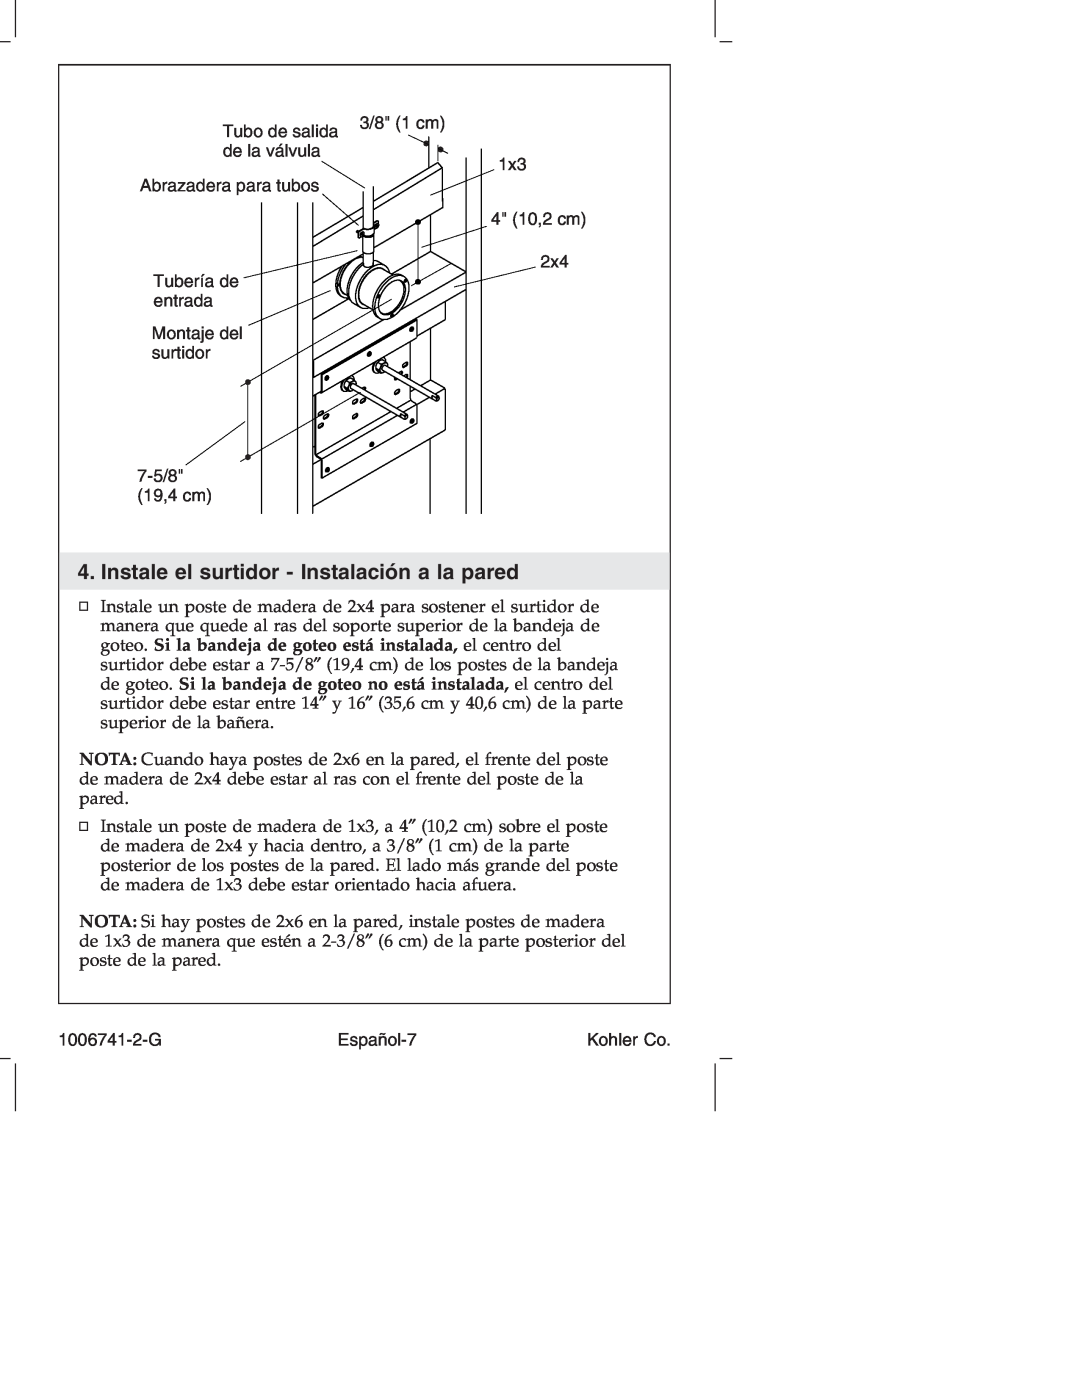 Kohler K-922/K-923 manual Instale el surtidor - Instalación a la pared, Tubo de salida, de la válvula, Español-7, 3/8 1 cm 